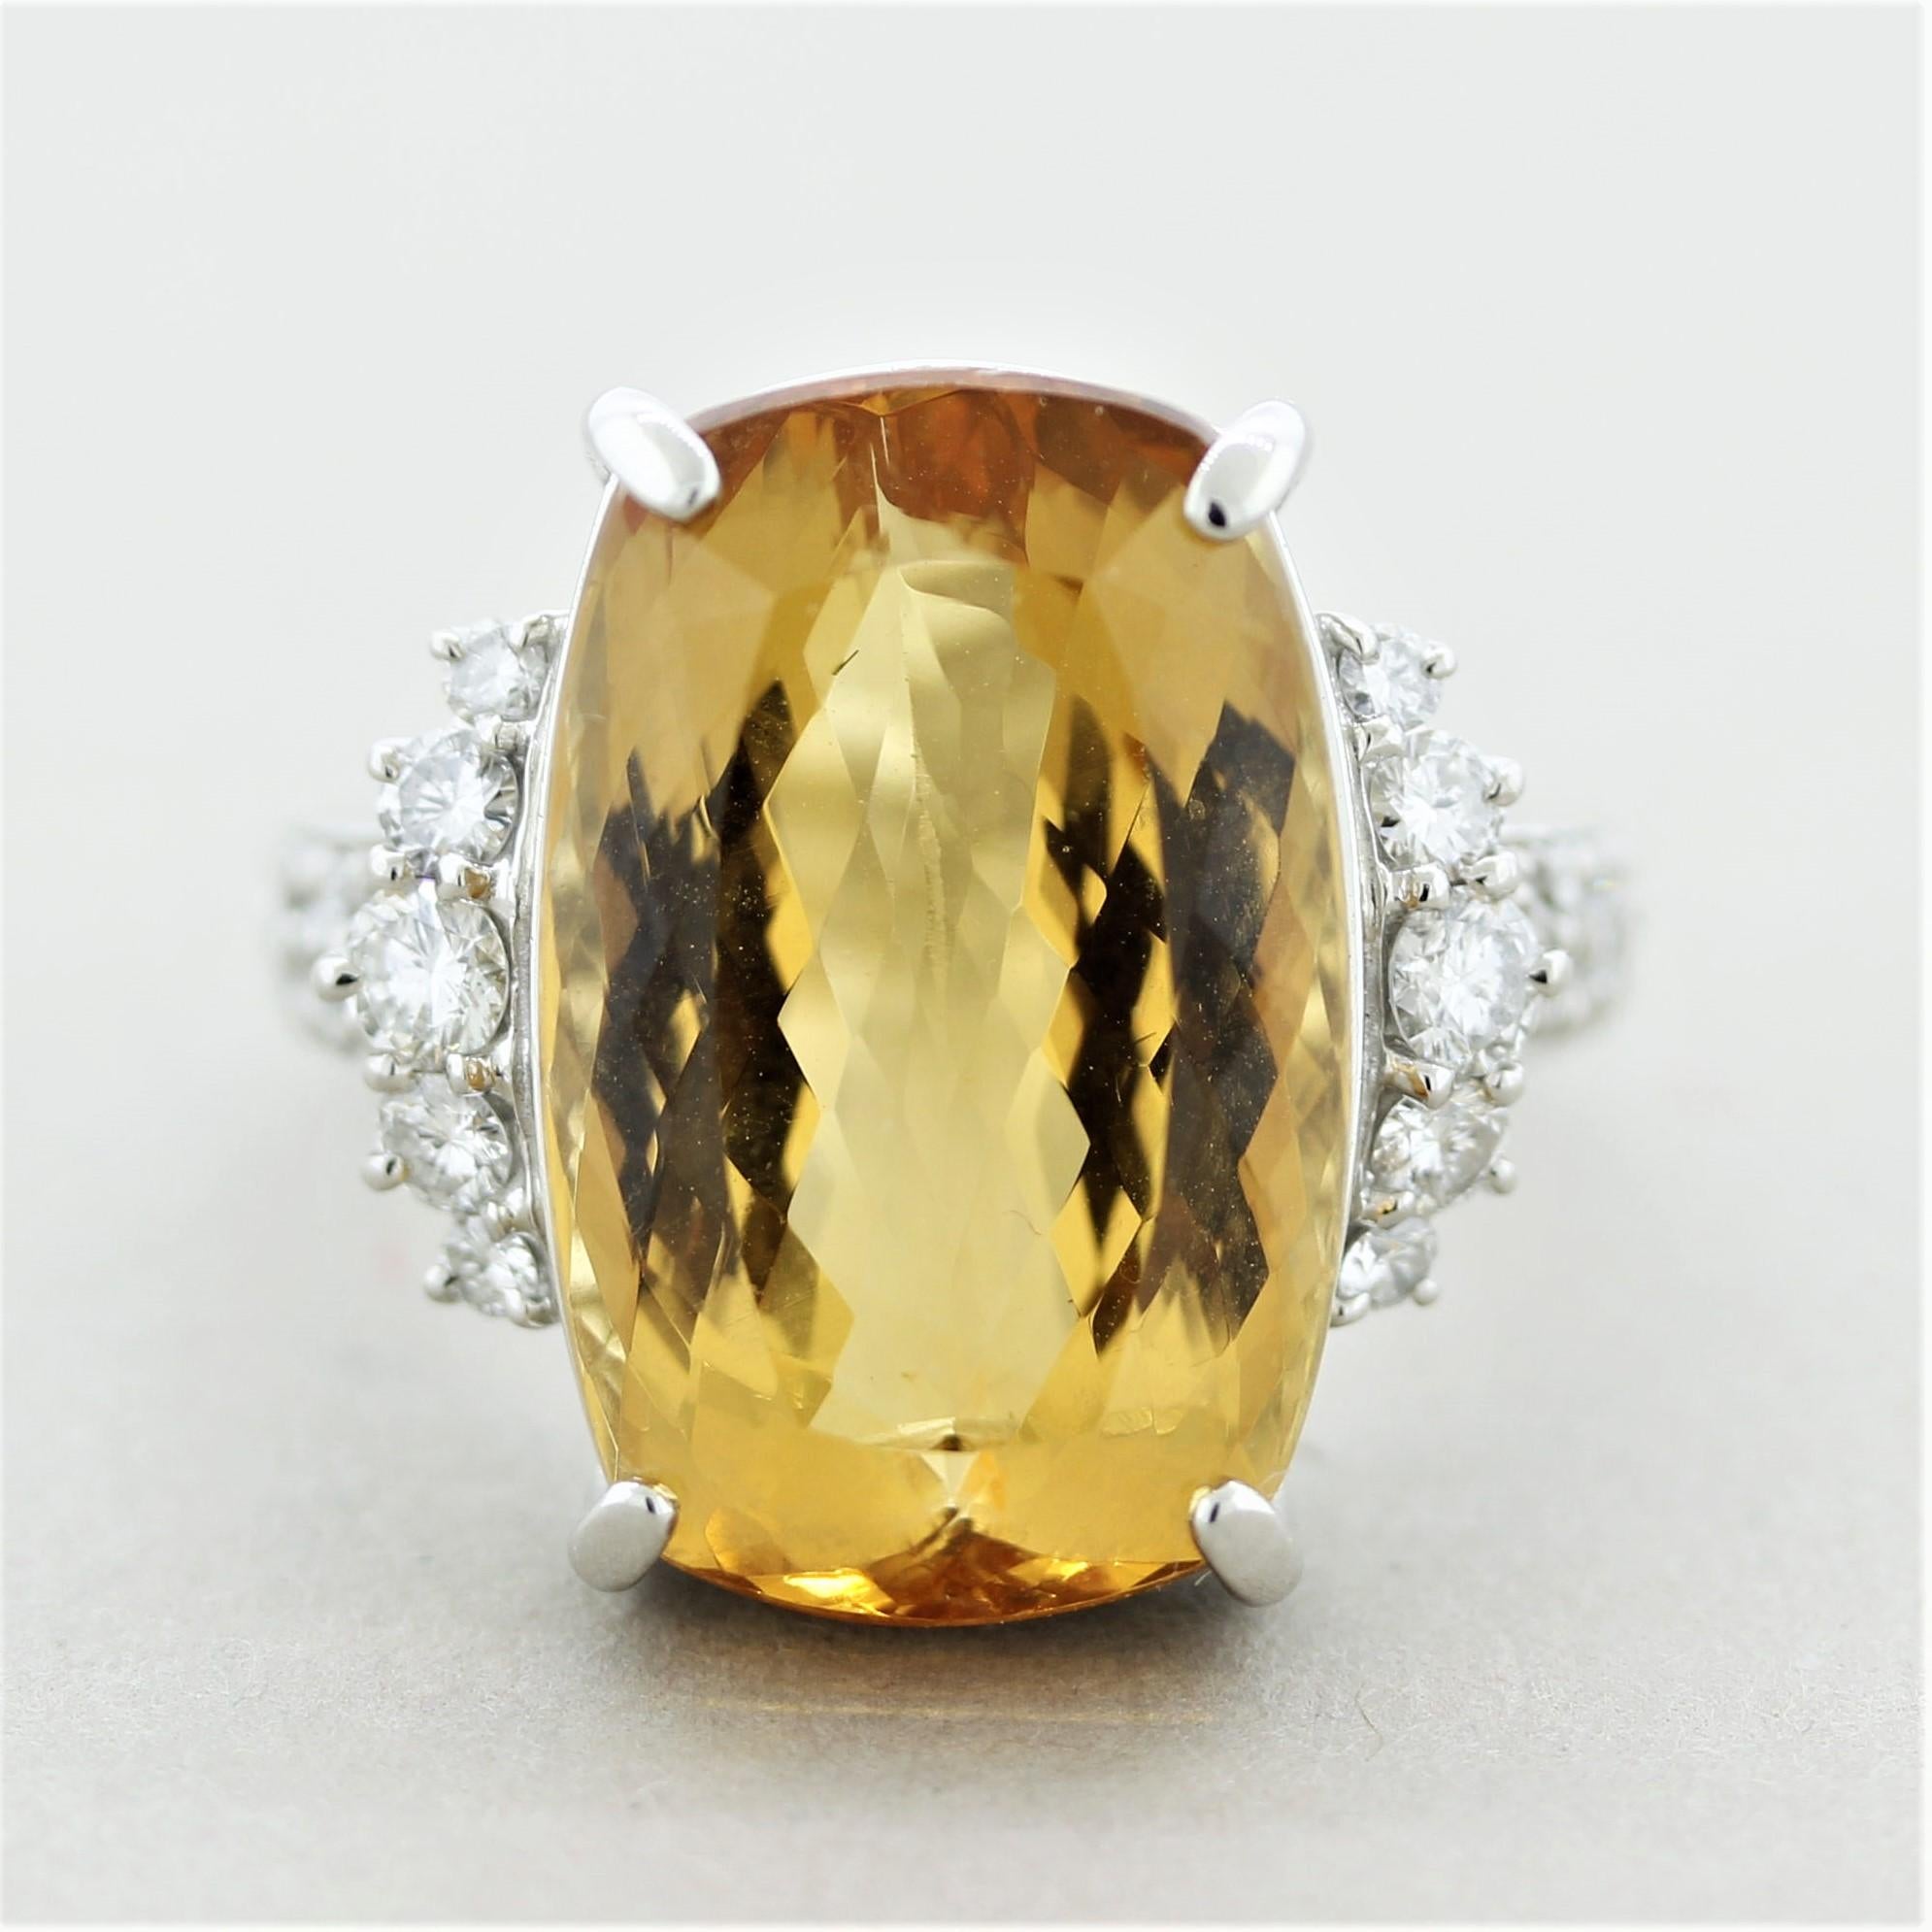 Ein besonderer Ring mit einem großen, schönen und seltenen Edelstein. Es handelt sich um einen Imperialtopas mit einem Gewicht von beachtlichen 21,65 Karat. Er hat die ideale gelb-orange Goldfarbe, die sehr begehrt ist, ohne sichtbare Einschlüsse,